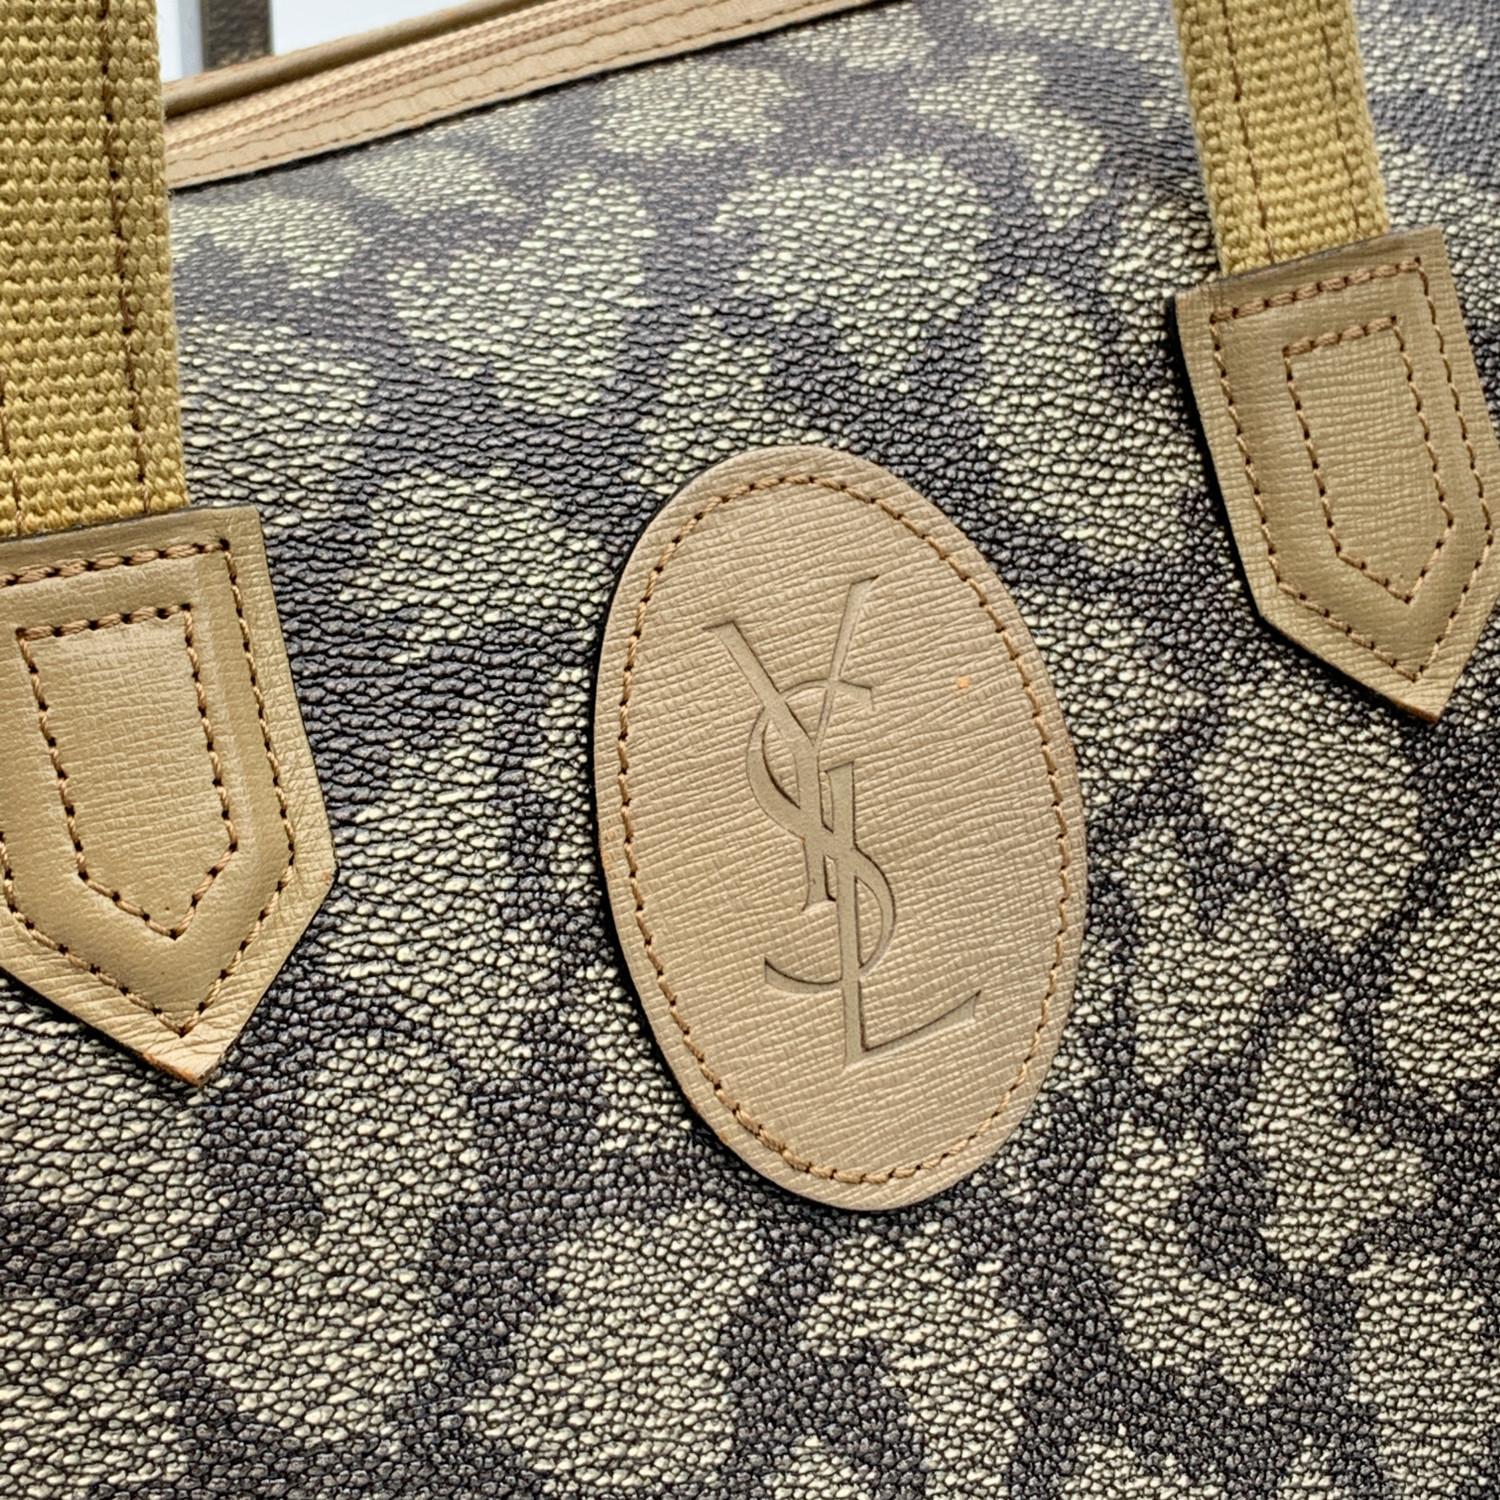 giraffe print bag